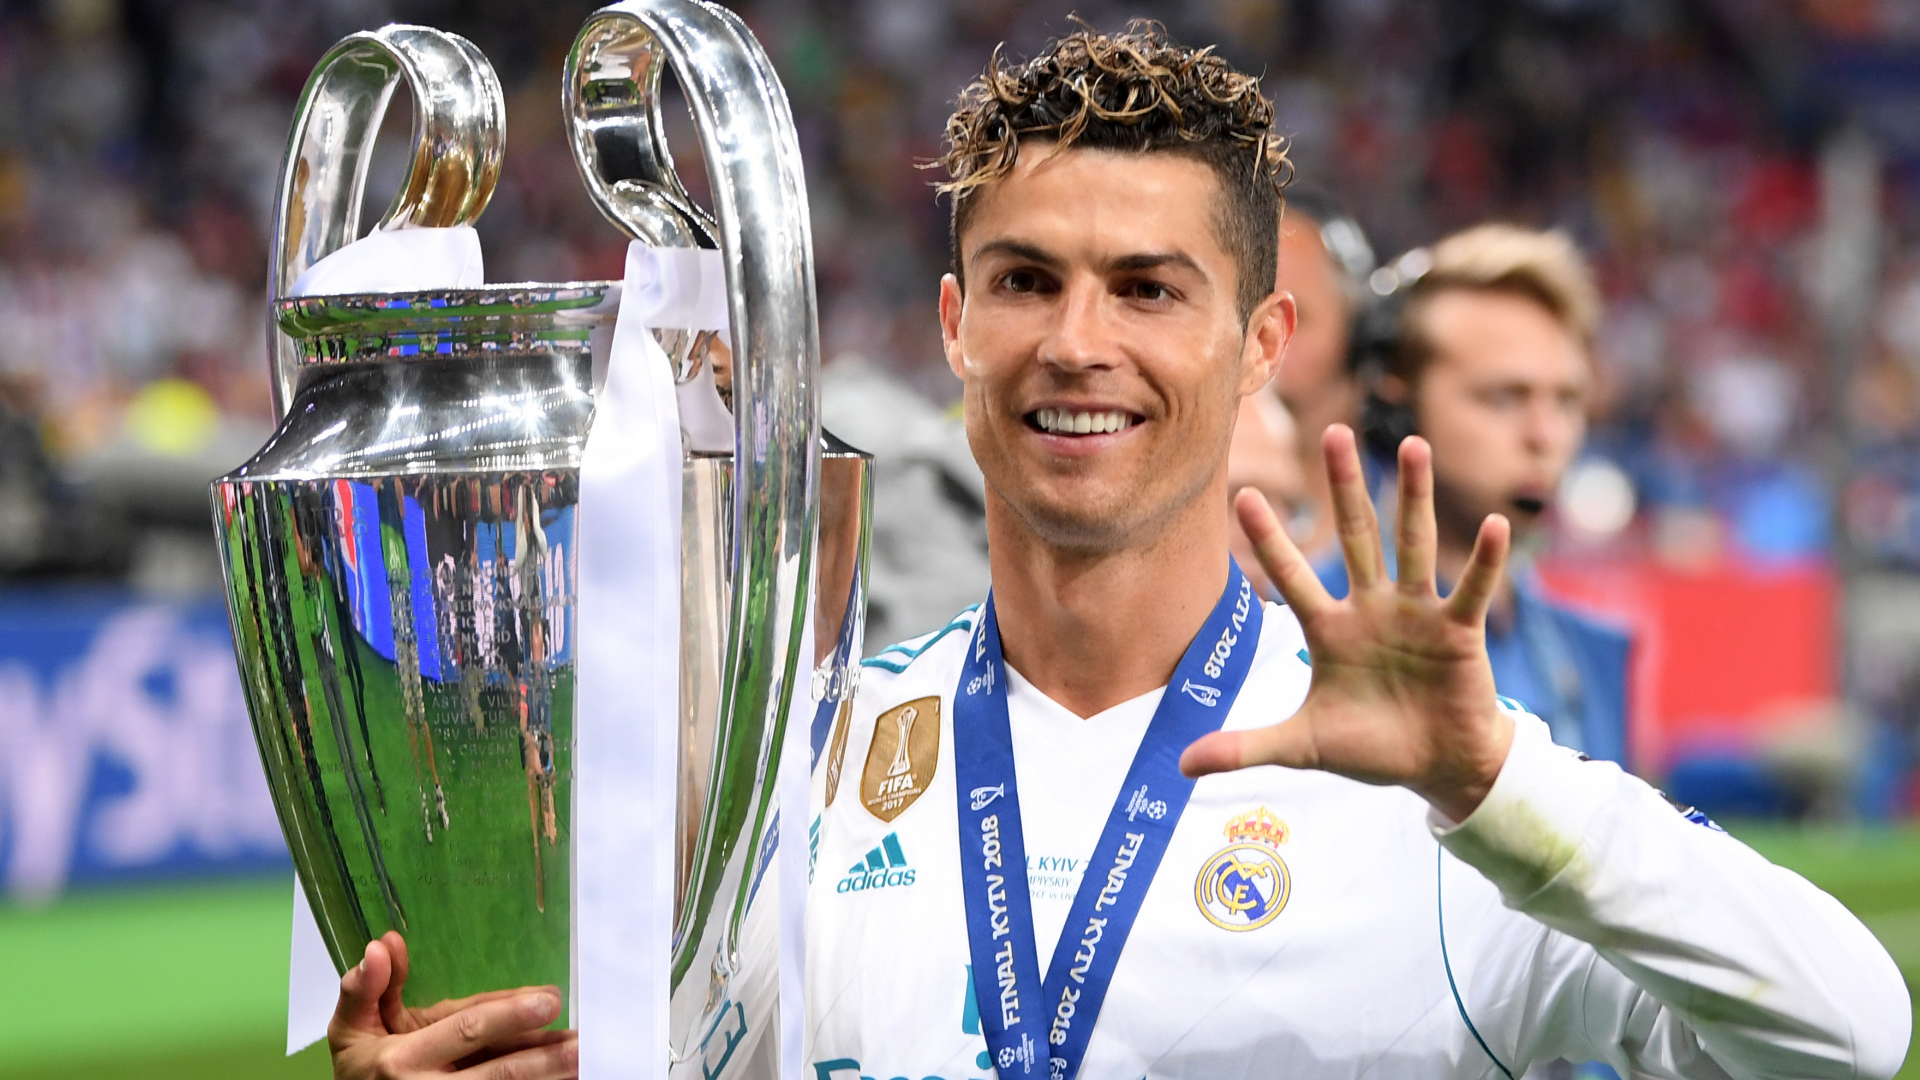 Cristiano Ronaldo am Lügendetektor: Würde der Star von Al-Nassr fünf Champions-League-Titel gegen den Gewinn der Weltmeisterschaft mit Portugal eintauschen?